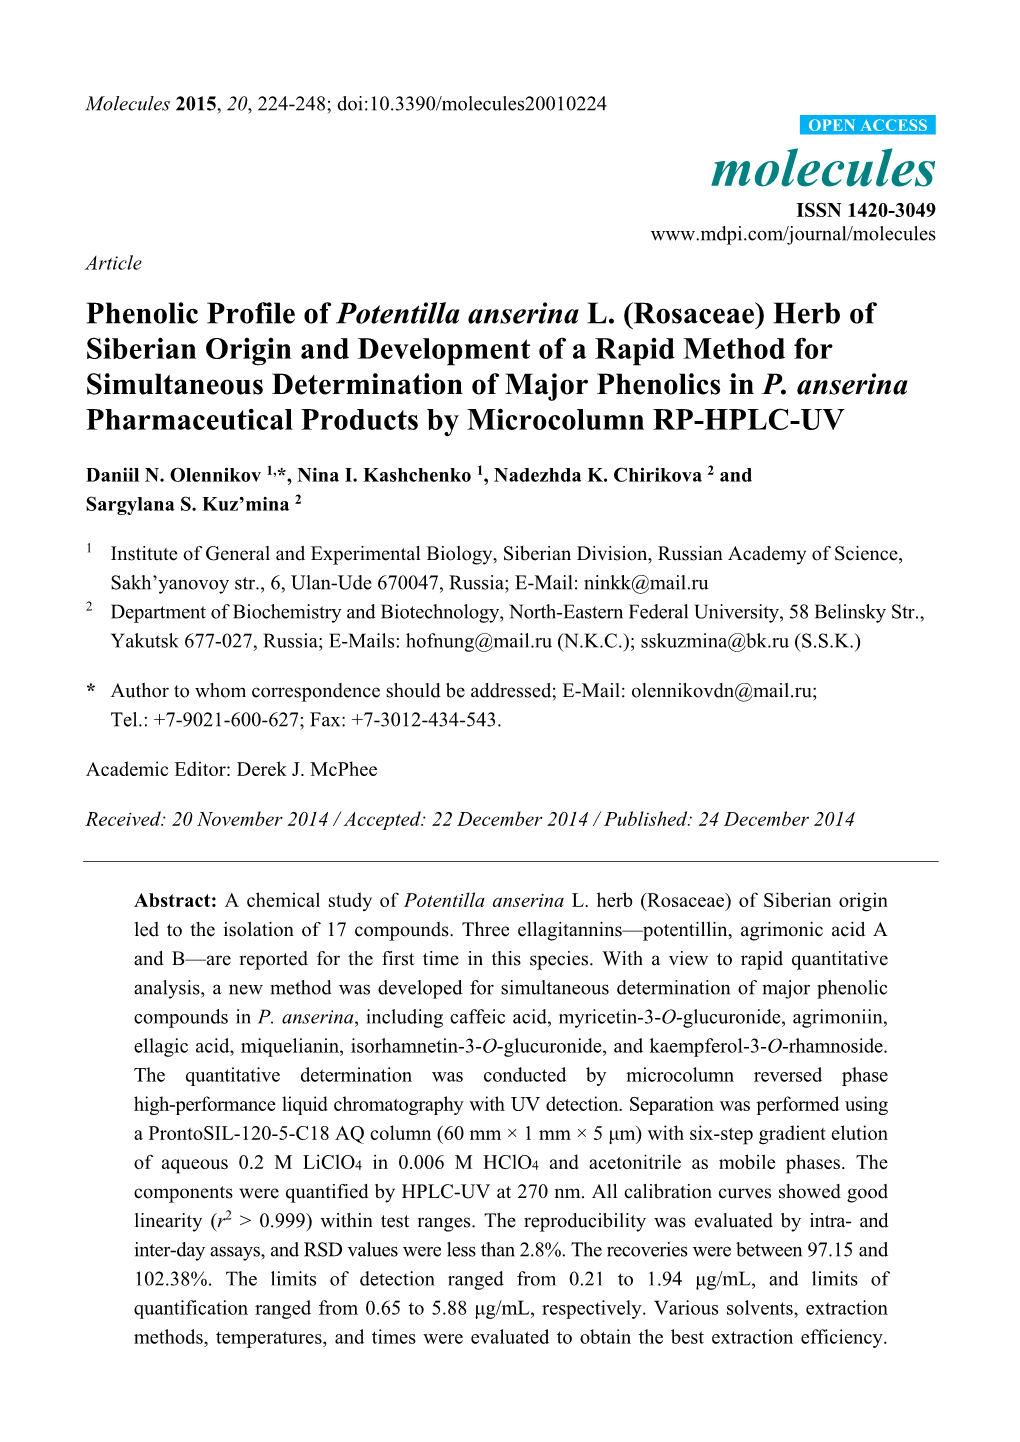 Phenolic Profile of Potentilla Anserina L